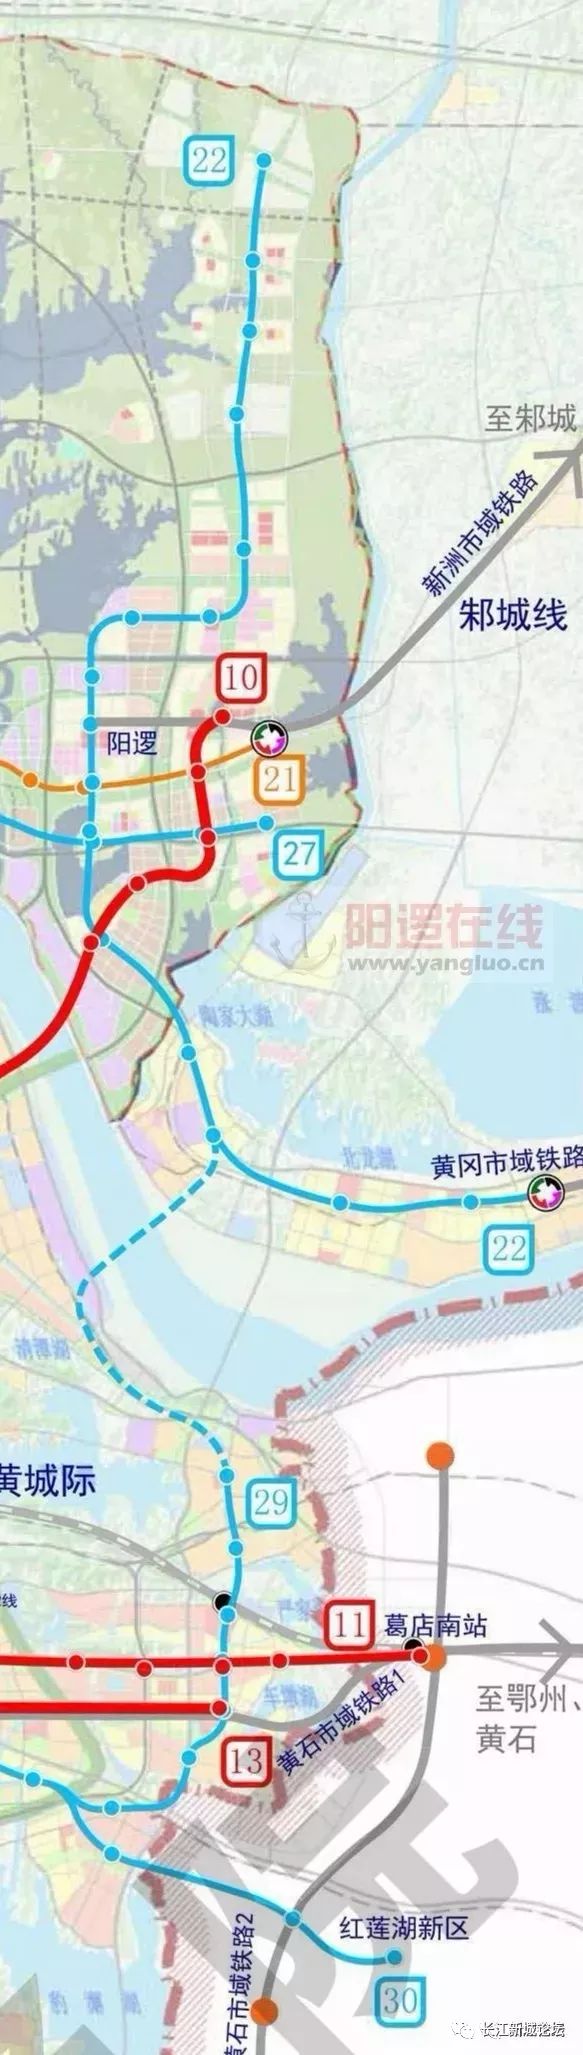 编制的前期工作已启动 地铁22号线贯穿长江新城东部 途经仓埠,阳逻